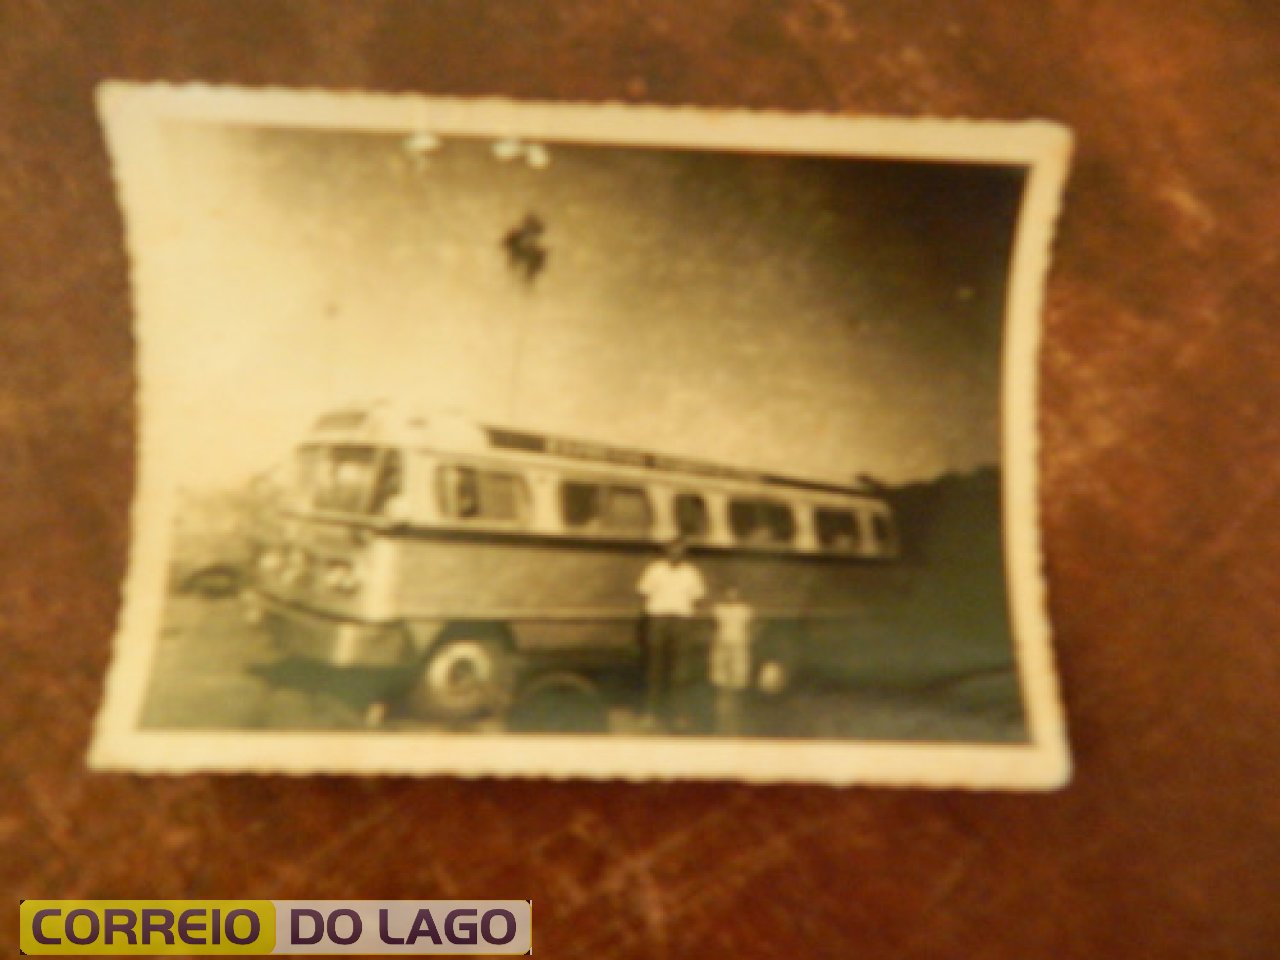 Ônibus da empresa Maringá que fazia o trajeto Guaíra-Santa Helena-Foz do Iguaçu. Década de 1960. Esta foto foi tirada defronte ao Posto Ipiranga de SH.